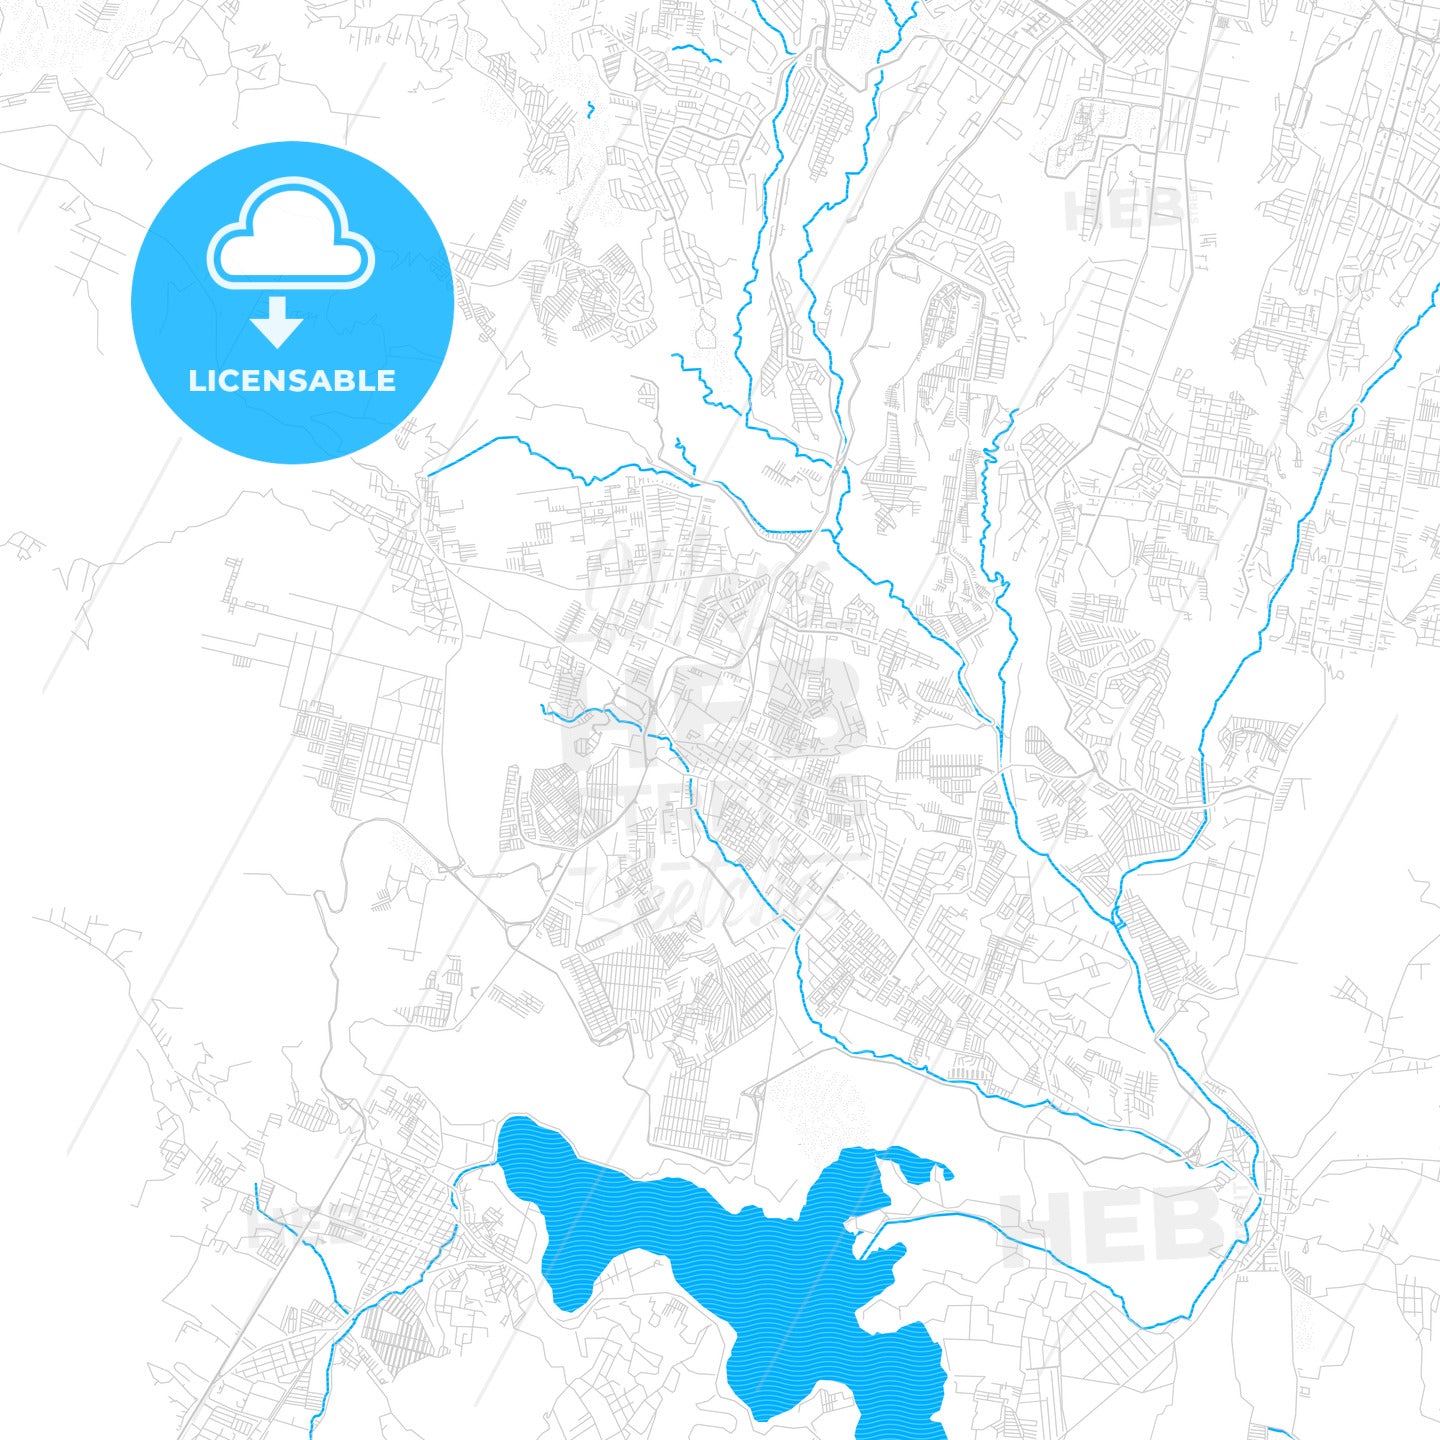 Villa Nueva, Guatemala PDF vector map with water in focus